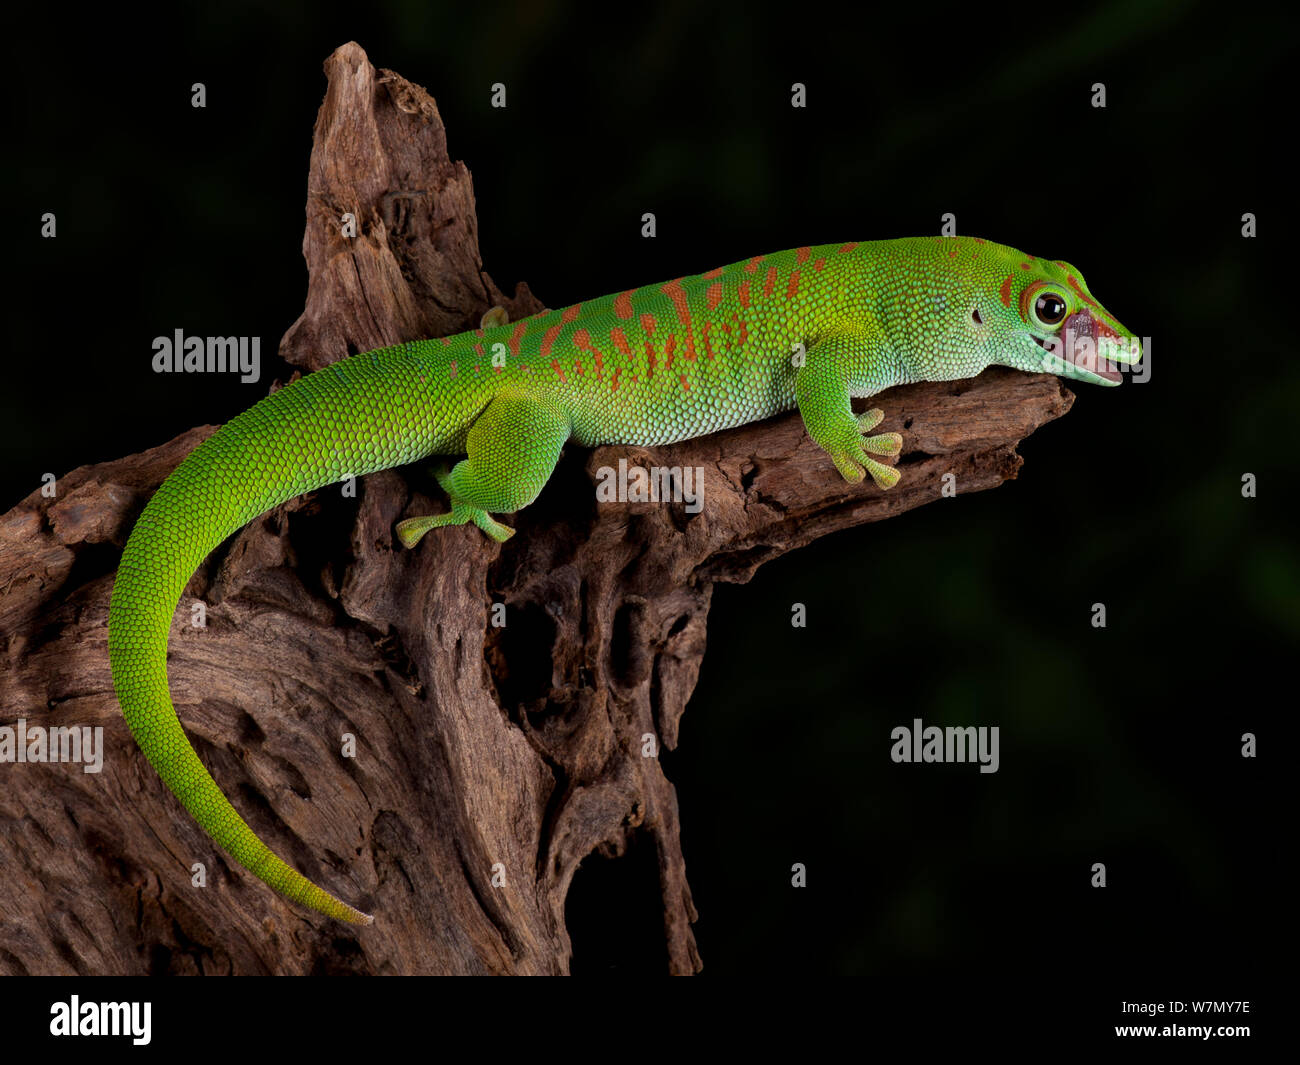 Giant Day Gecko, (Phelsuma madagascariensis grandis) captive from Madagascar Stock Photo